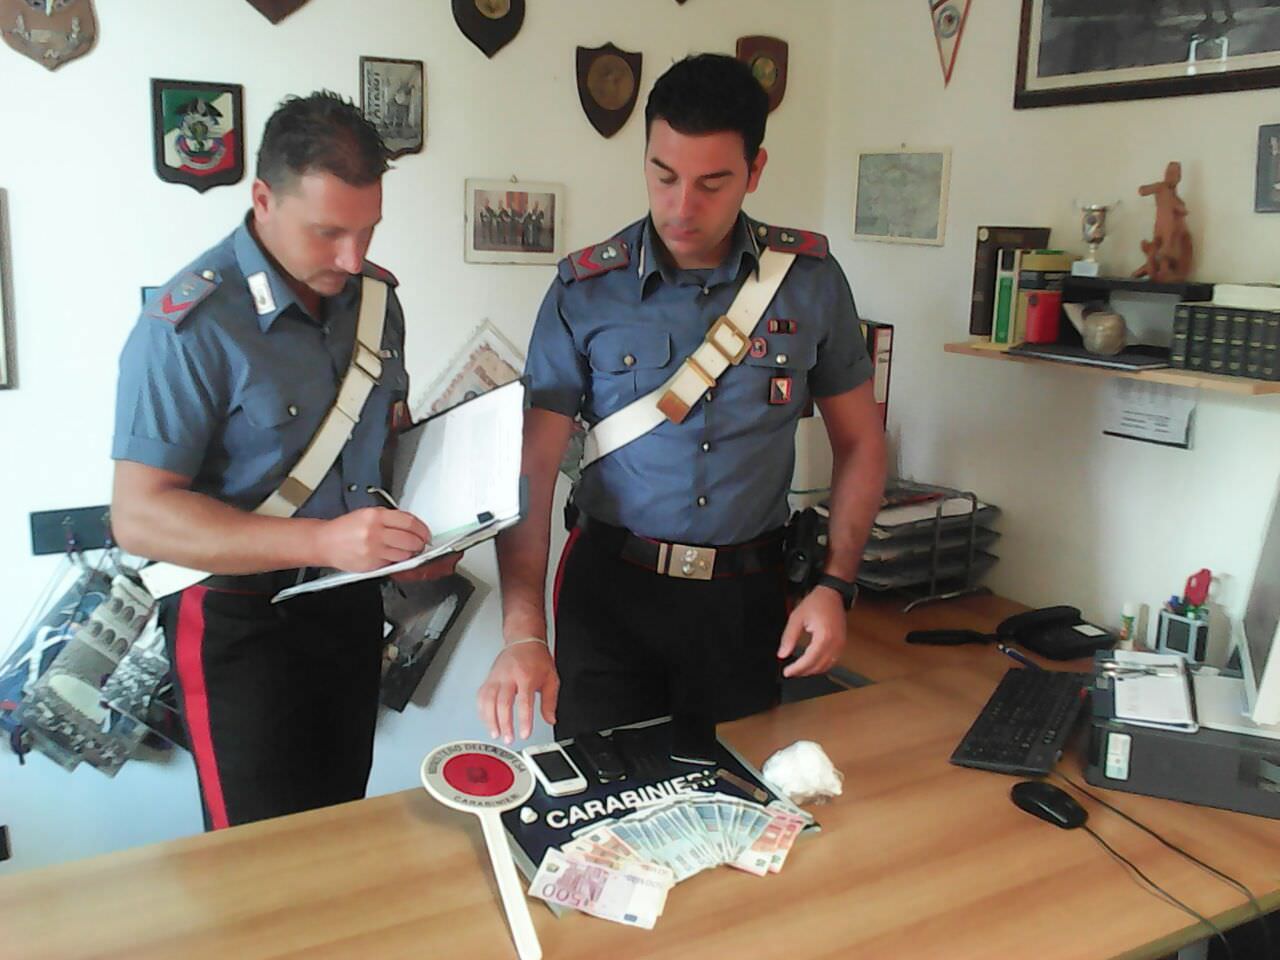 Beccato mentre vende cocaina a due clienti, un arresto a Pietrasanta